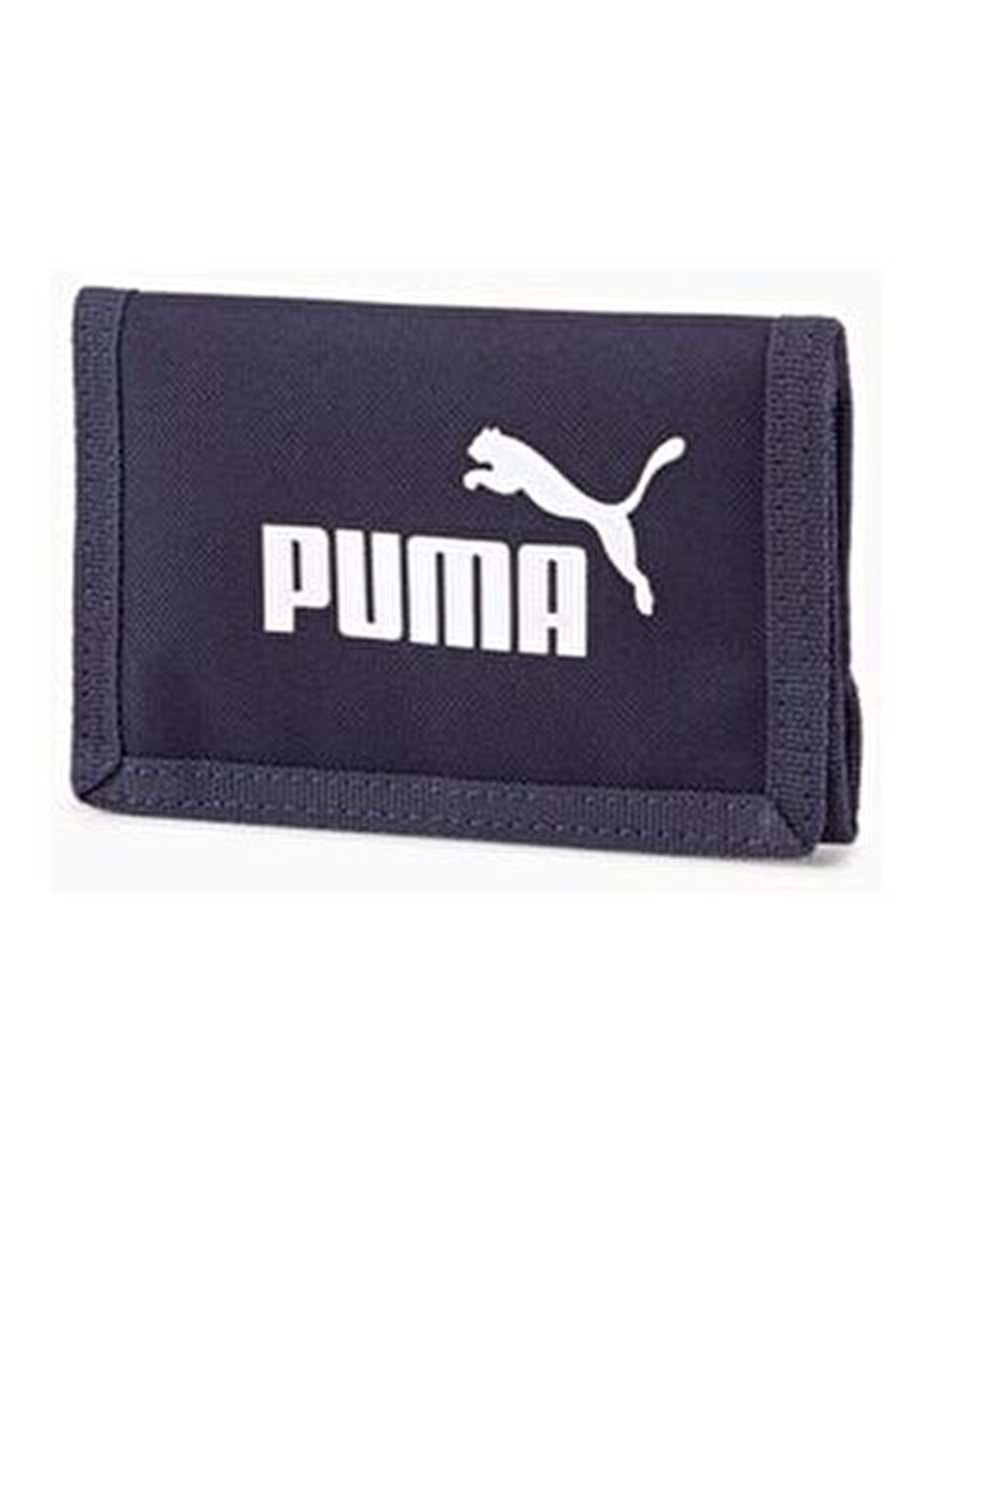 Puma Phase Wallet Lacivert Cüzdan 07561743